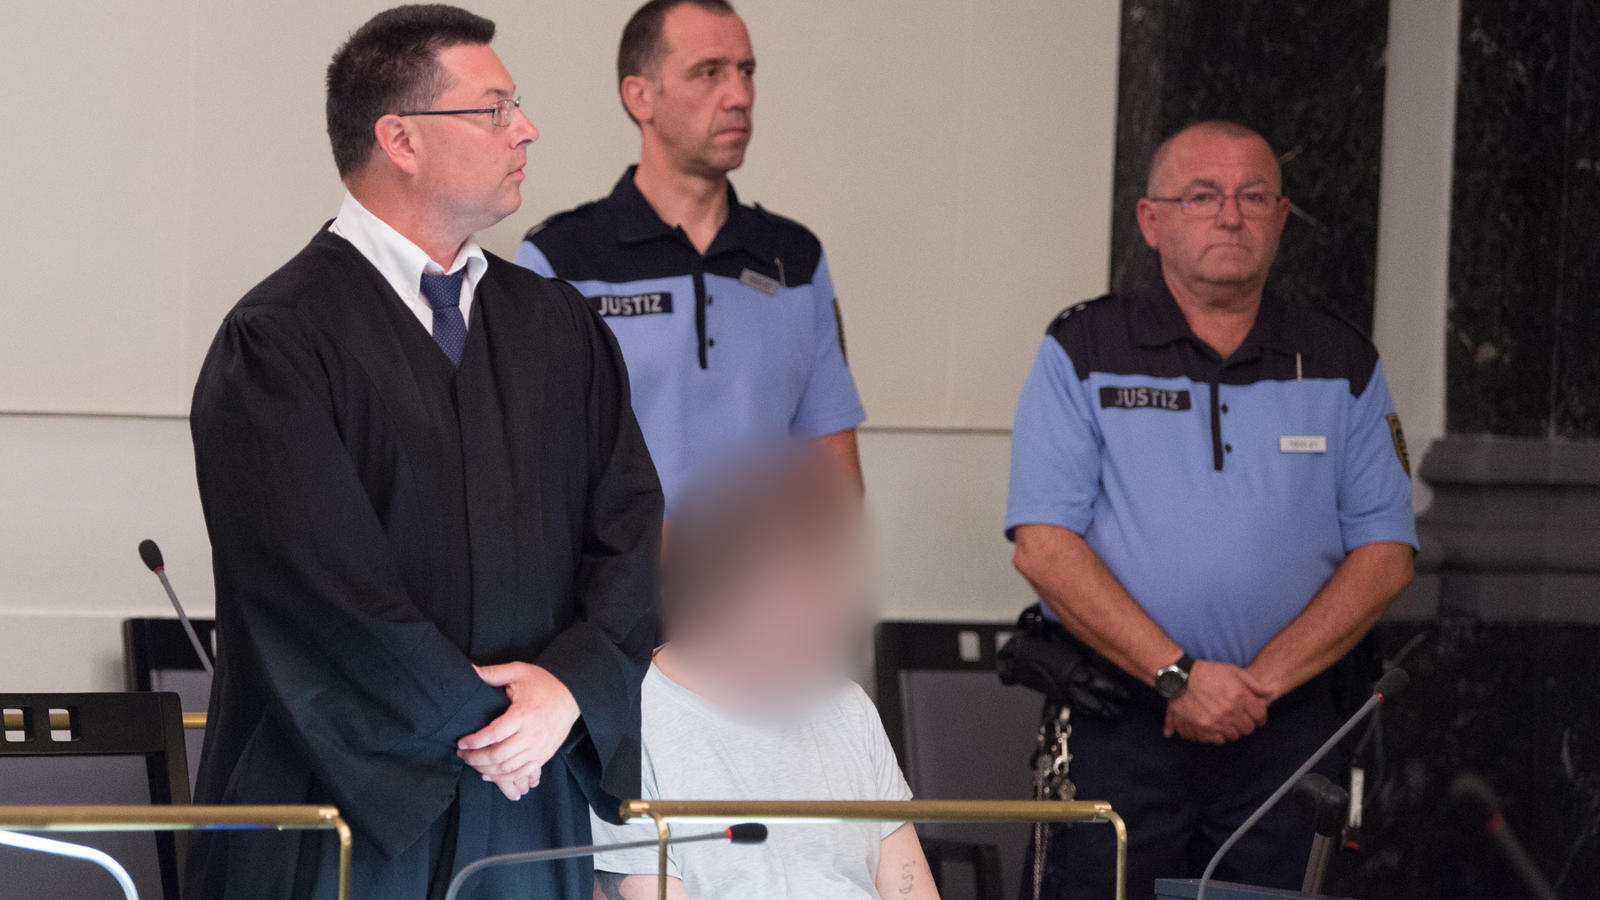 Der Angeklagte Helmut S. (M) sitzt am 30.08.2017 im Landgericht in Zwickau (Sachsen) zu Prozessbeginn neben seinem Rechtsanwalt Andreas Bönisch (l). Mehr als 30 Jahre nach dem Mord an einer jungen Frau im Vogtland soll am gleichen Tag das Urteil gesp